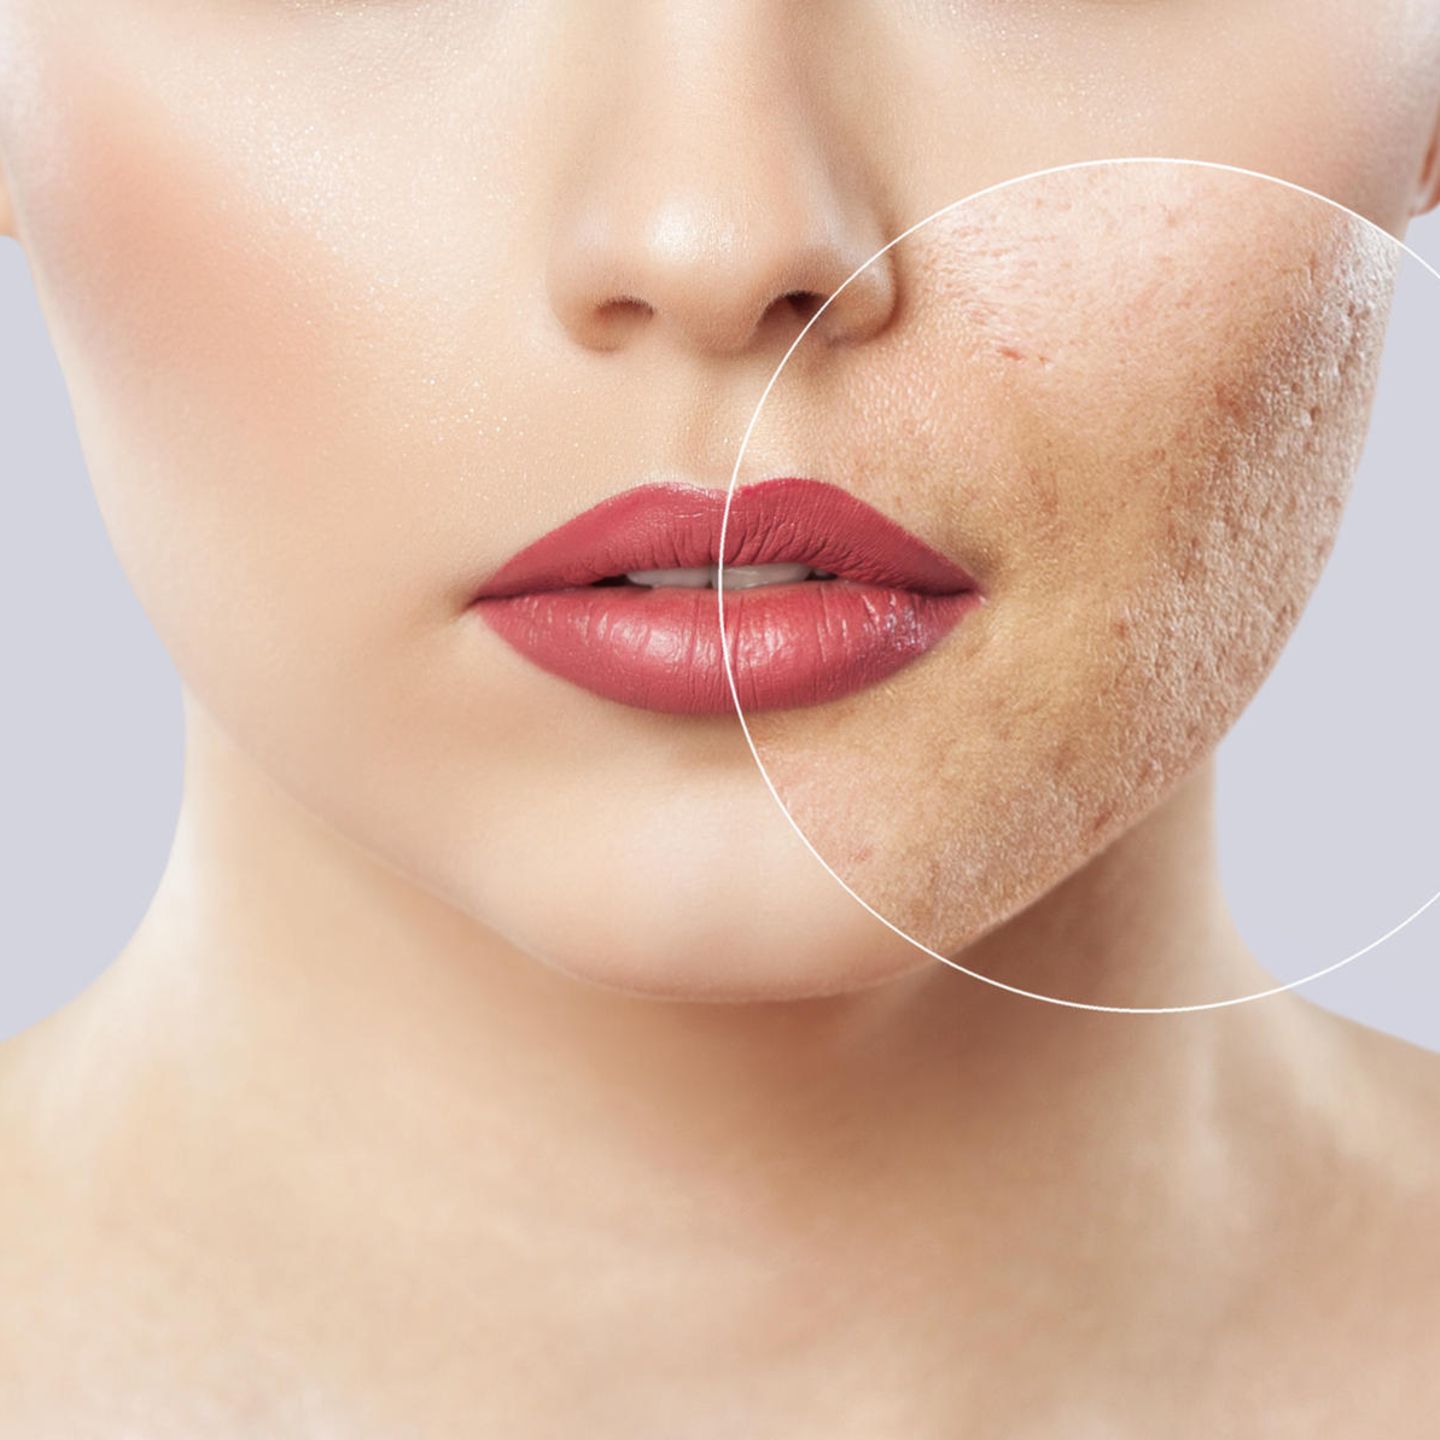 Mitesser entfernen: So wird die Haut porenrein | STERN.de